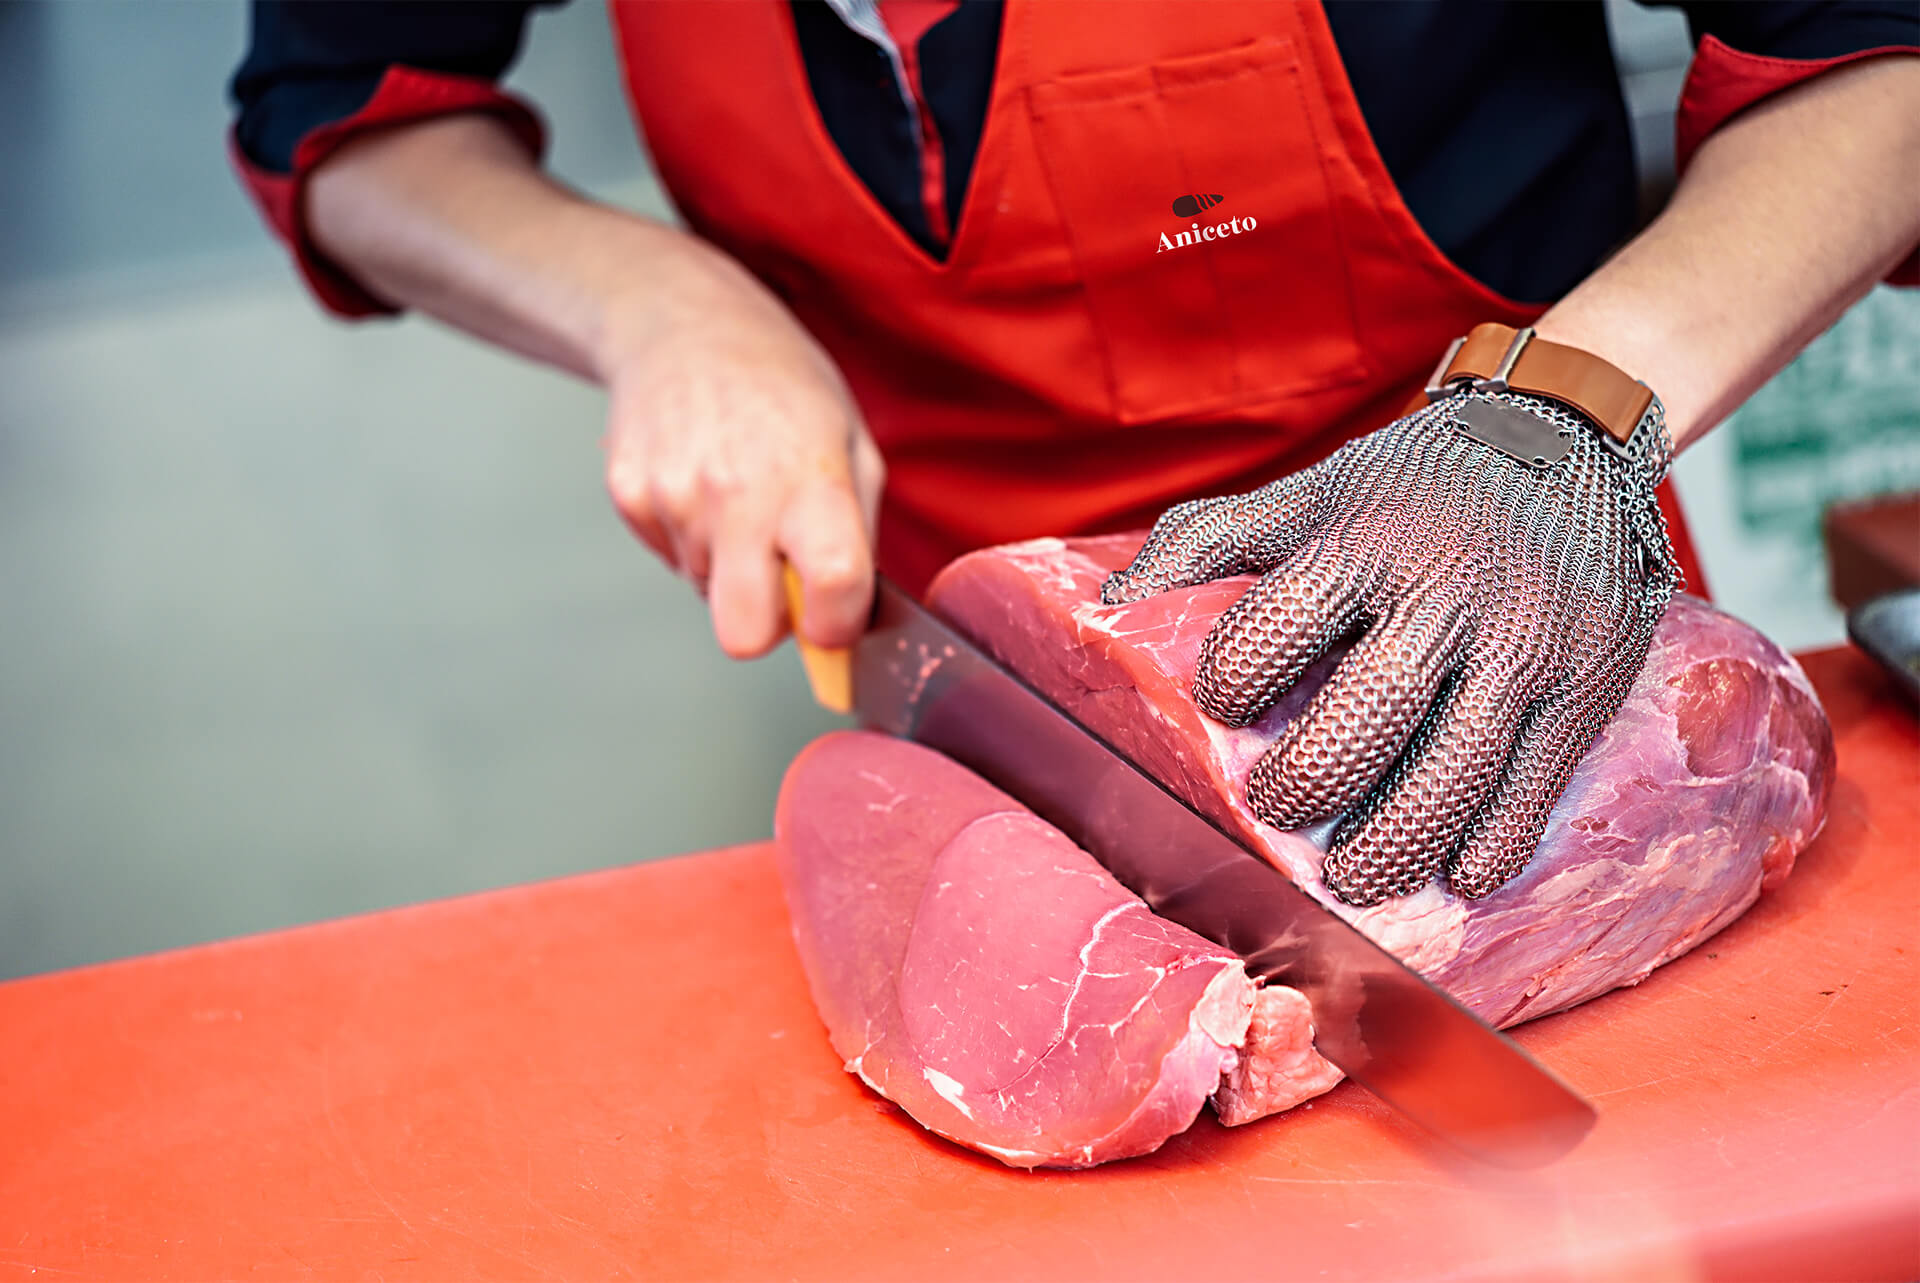 acougueiro cortando carne